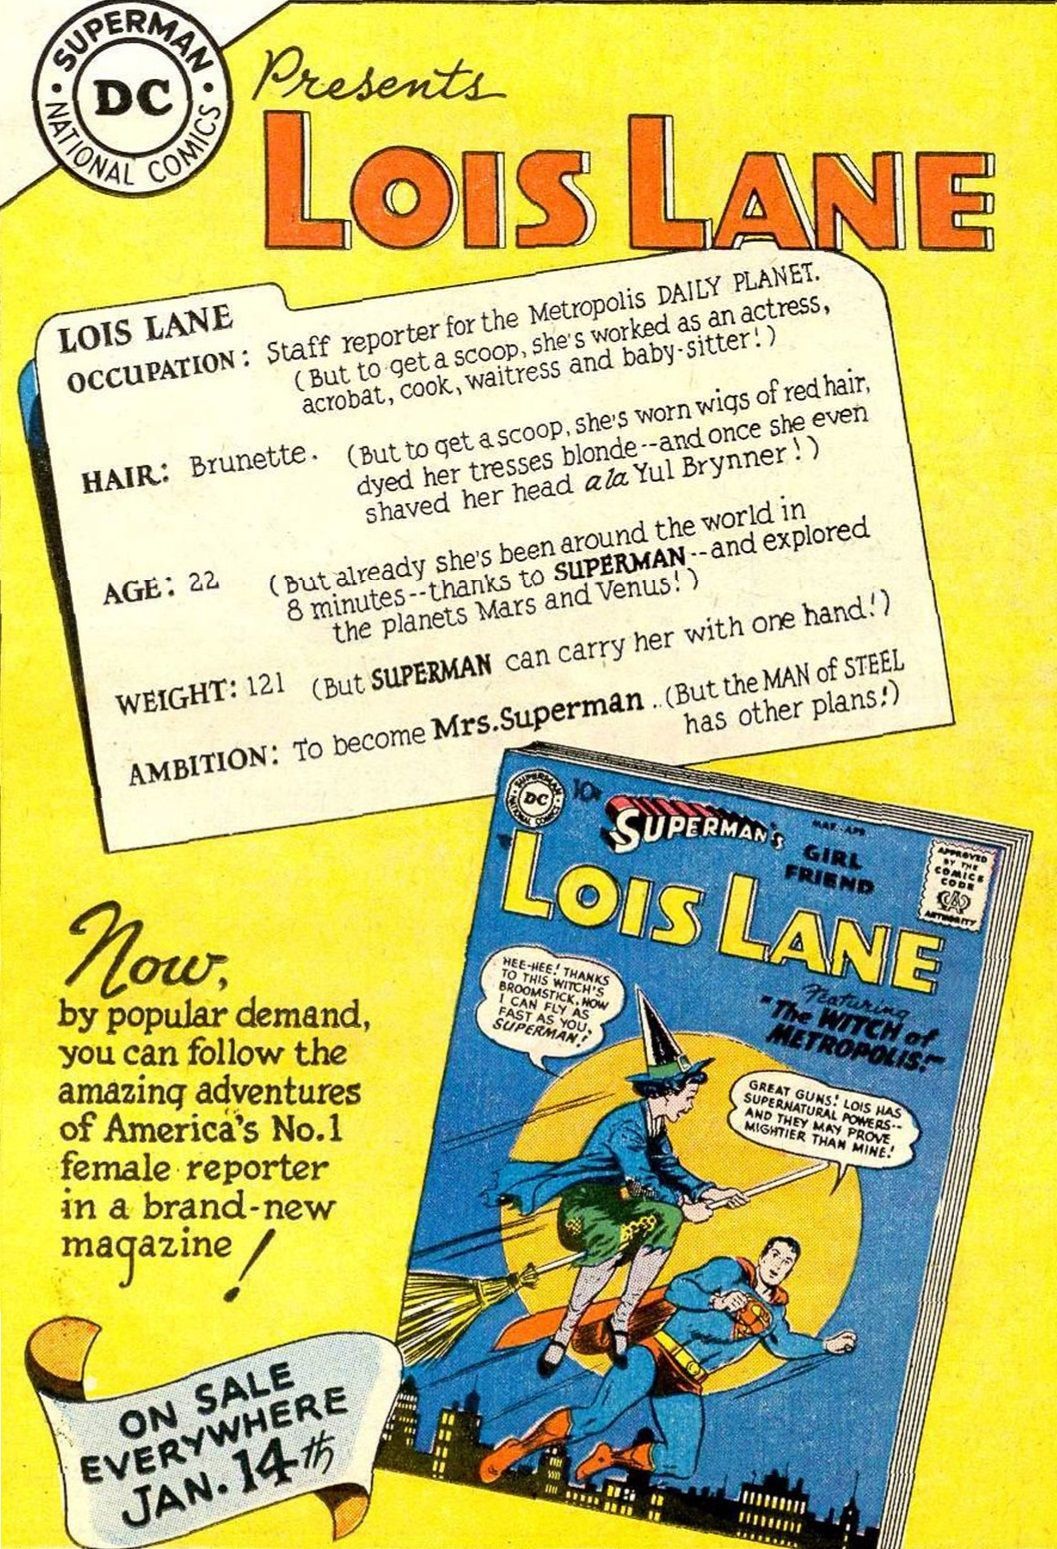 Kdo je starejši, Superman ali Lois Lane? (Zapleteno je)